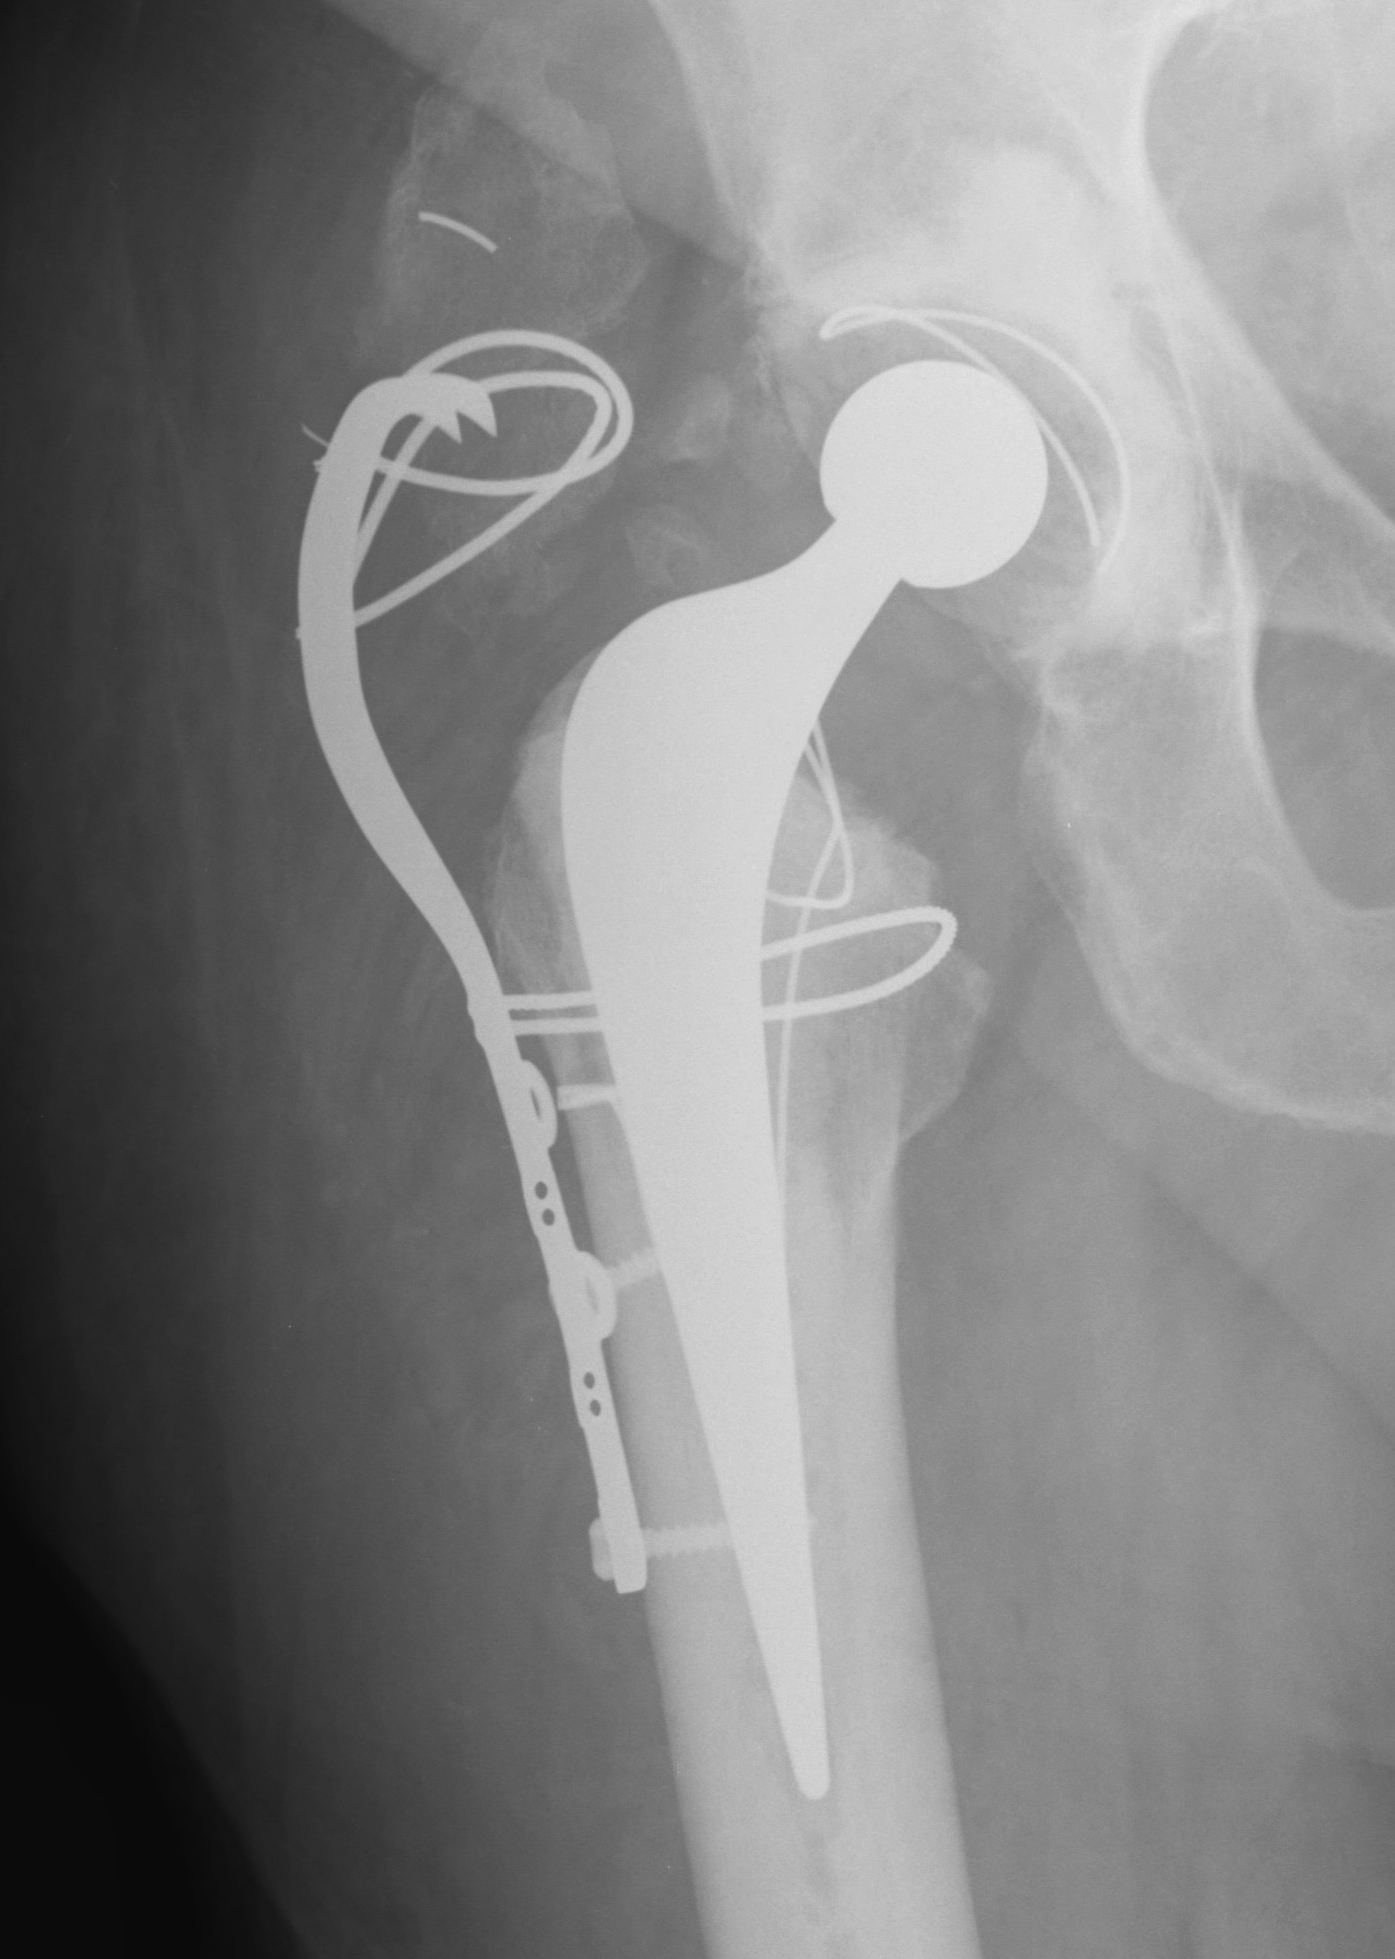 GT Osteotomy Failed Plate